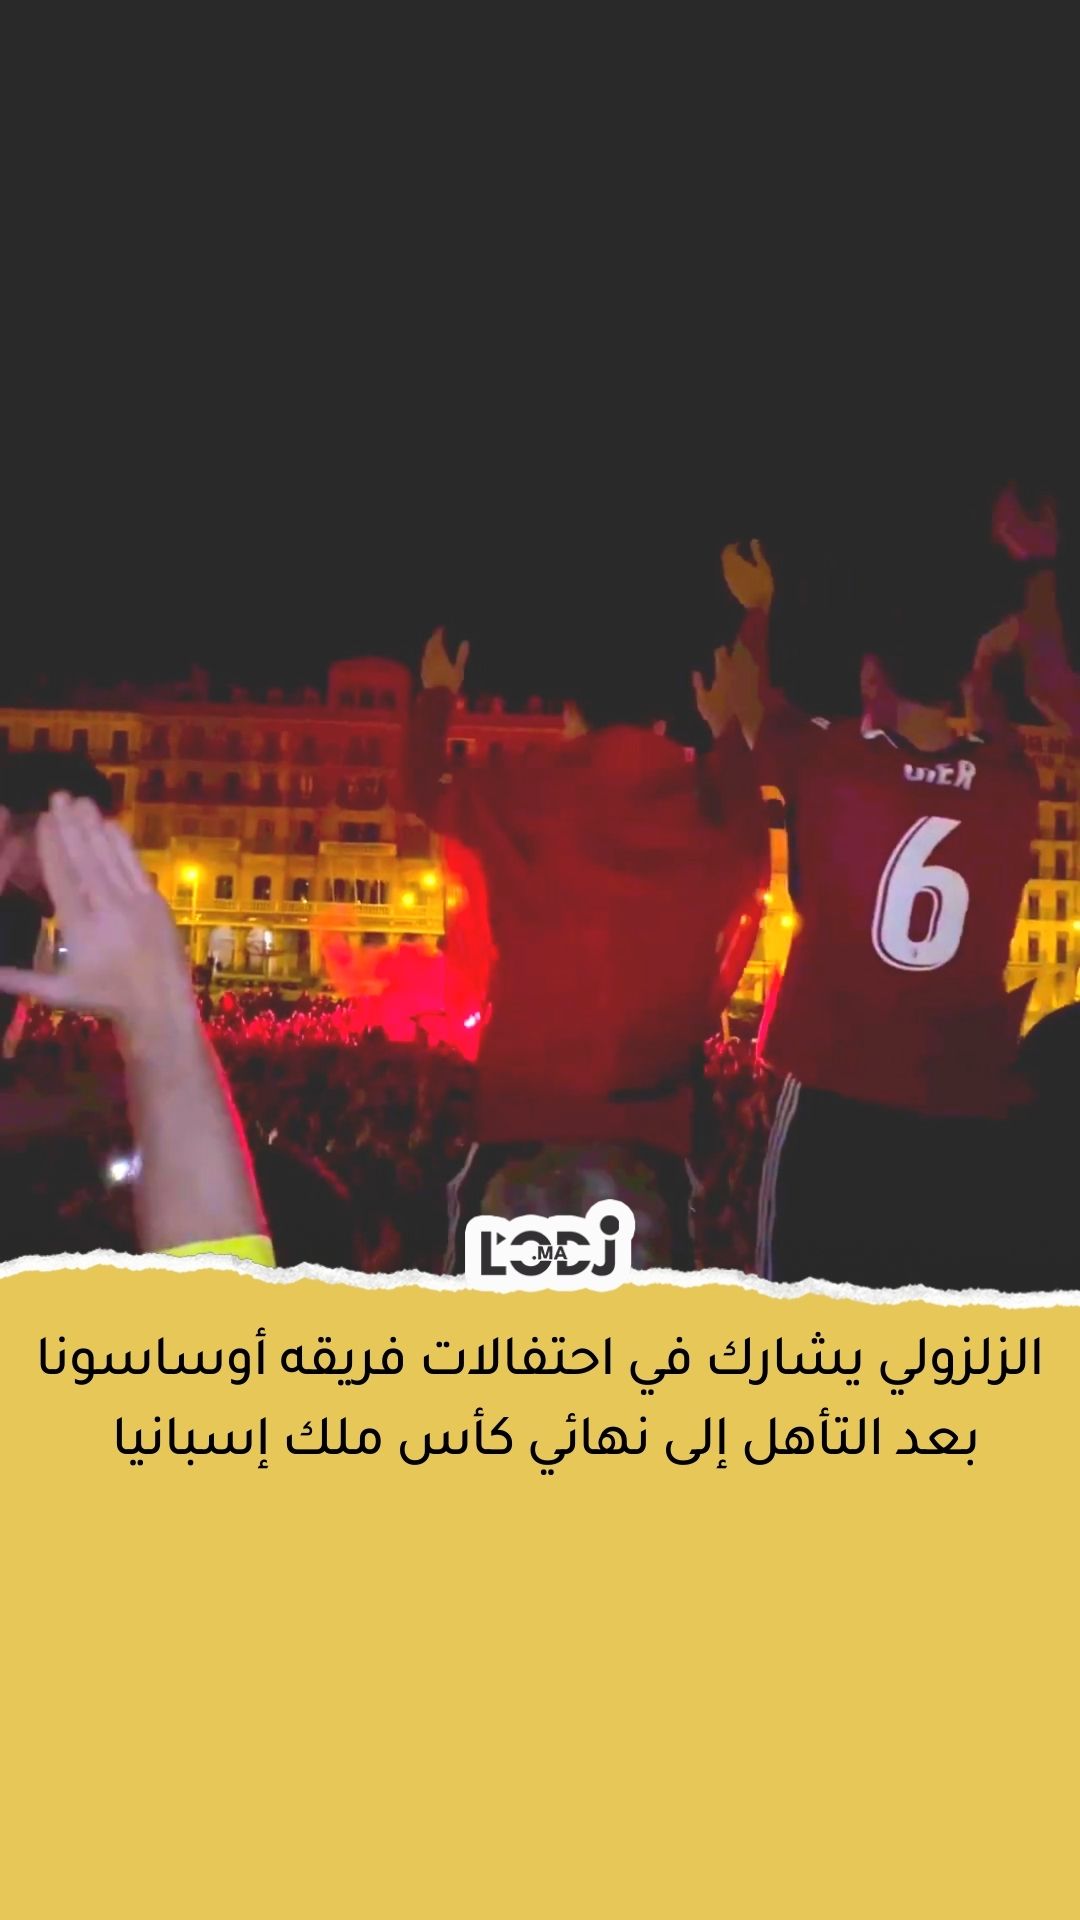 المغربي عبد الصمد الزلزولي يشارك في احتفالات فريقه أوساسونا بعد التأهل إلى نهائي كأس ملك إسبانيا